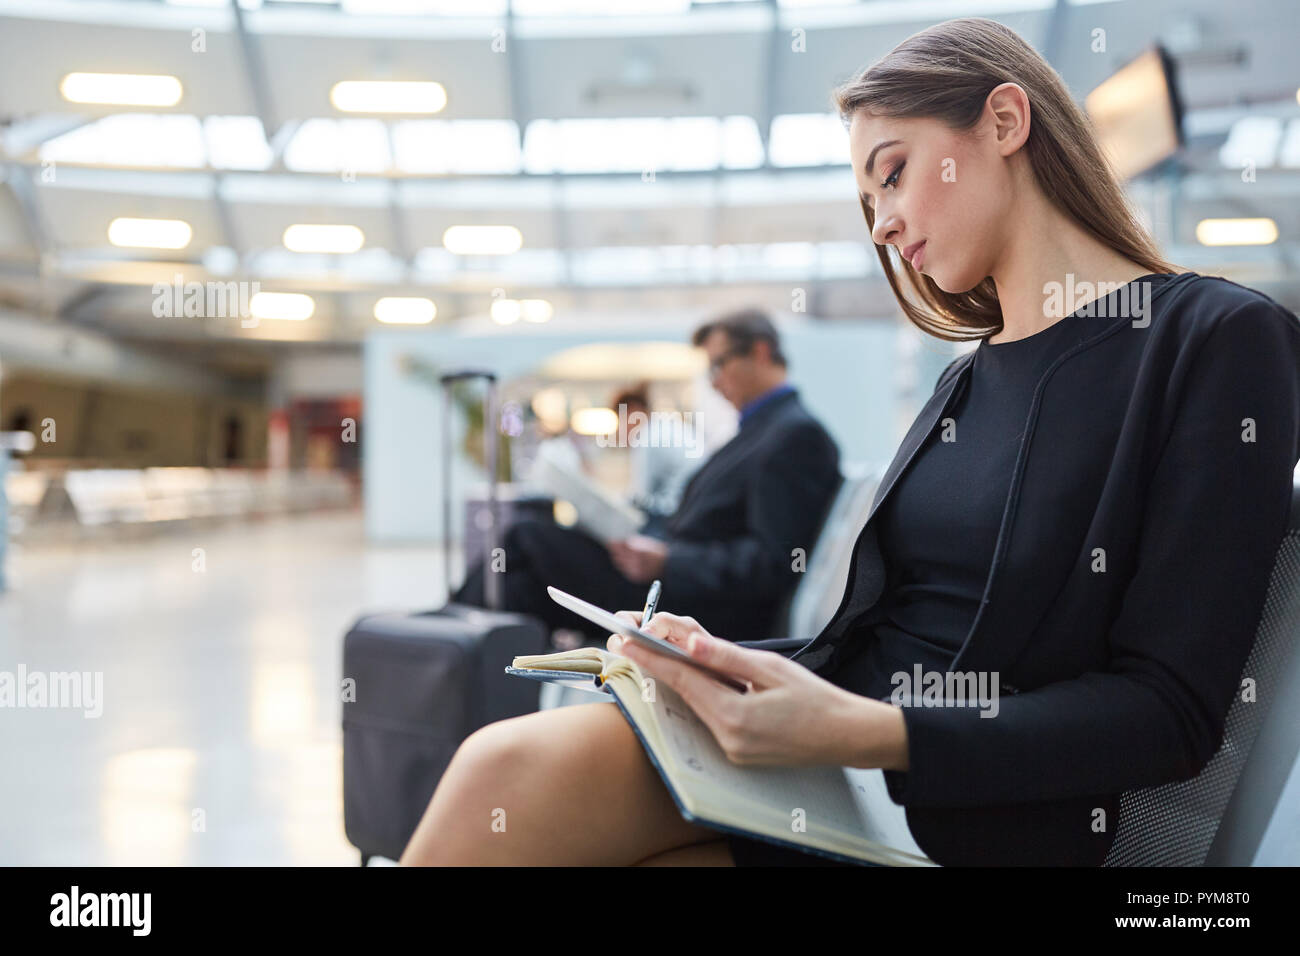 En femme d'attente dans l'aéroport avec ses plans carnet de rendez-vous d'affaires Banque D'Images